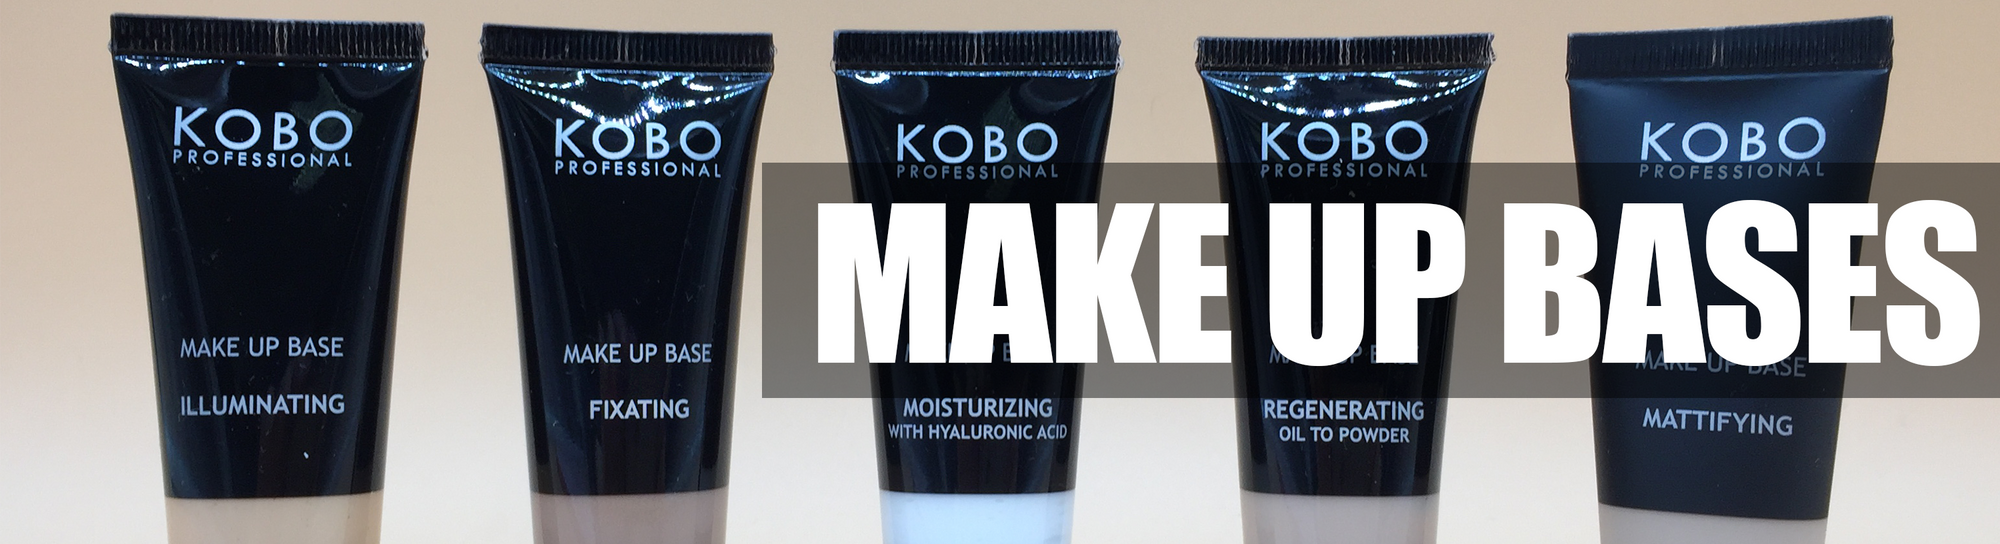 KOBO Makeup Bases